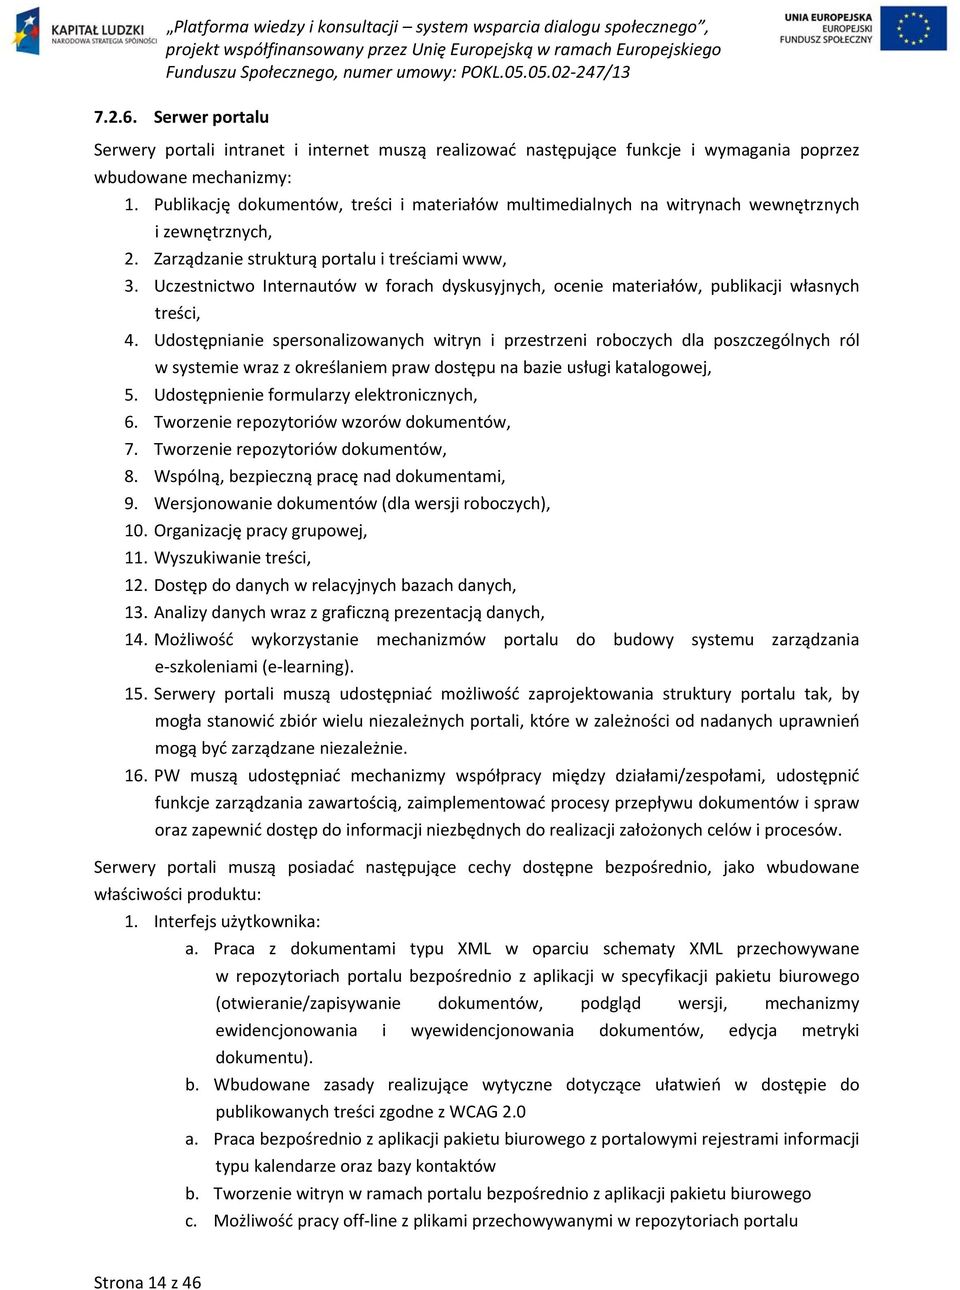 Uczestnictwo Internautów w forach dyskusyjnych, ocenie materiałów, publikacji własnych treści, 4.